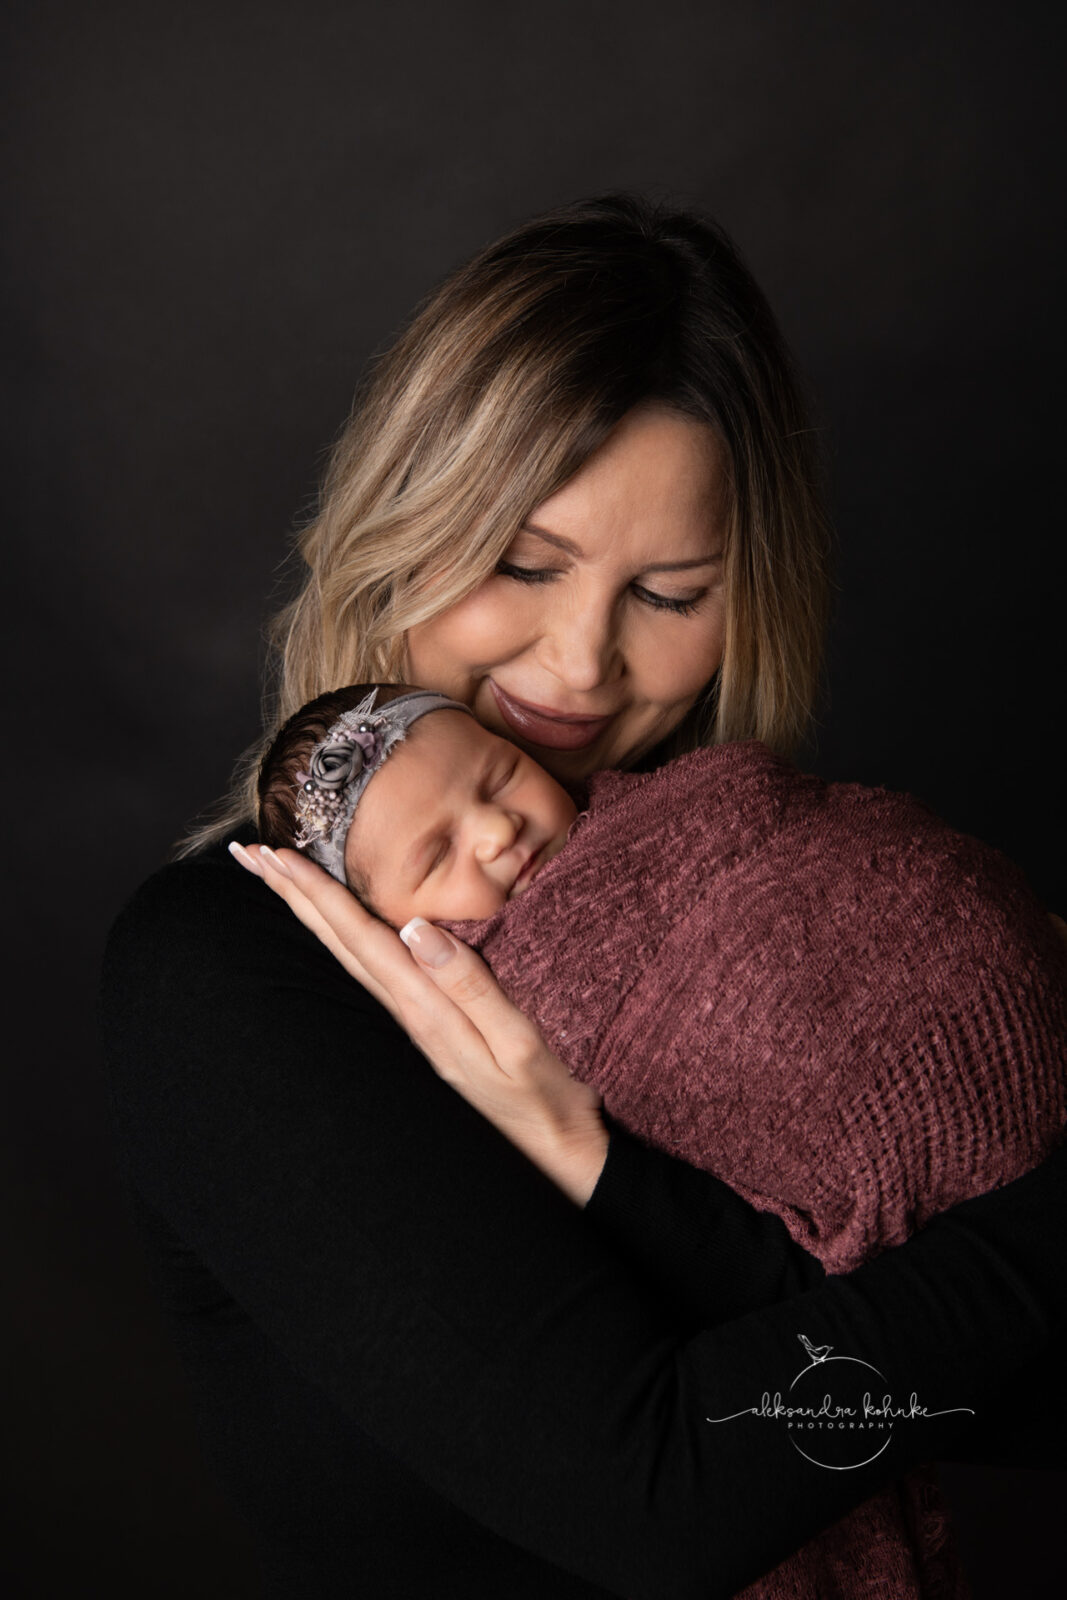 Geschwistershooting mit Neugeborenen im Fotostudio in Rapperswil Jona